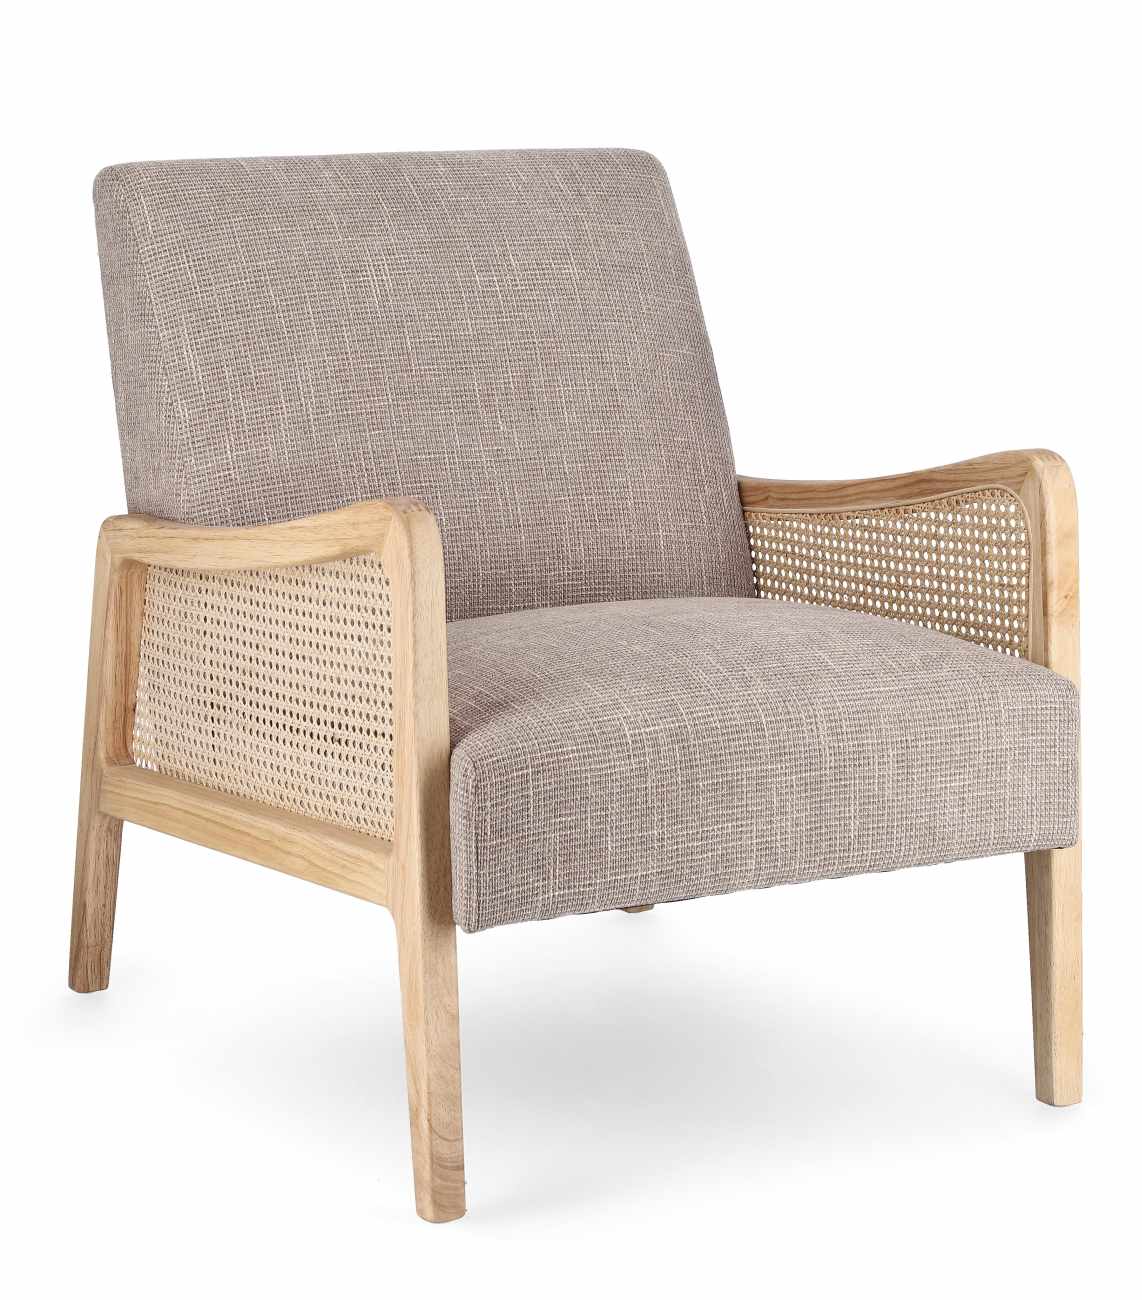 Der Sessel Deanna überzeugt mit seinem modernen Stil. Gefertigt wurde er aus einem Stoff-Bezug, welcher einen Taupe Farbton besitzt. Das Gestell ist aus Kautschukholz und hat eine natürliche Farbe. Der Sessel verfügt über eine Armlehne.